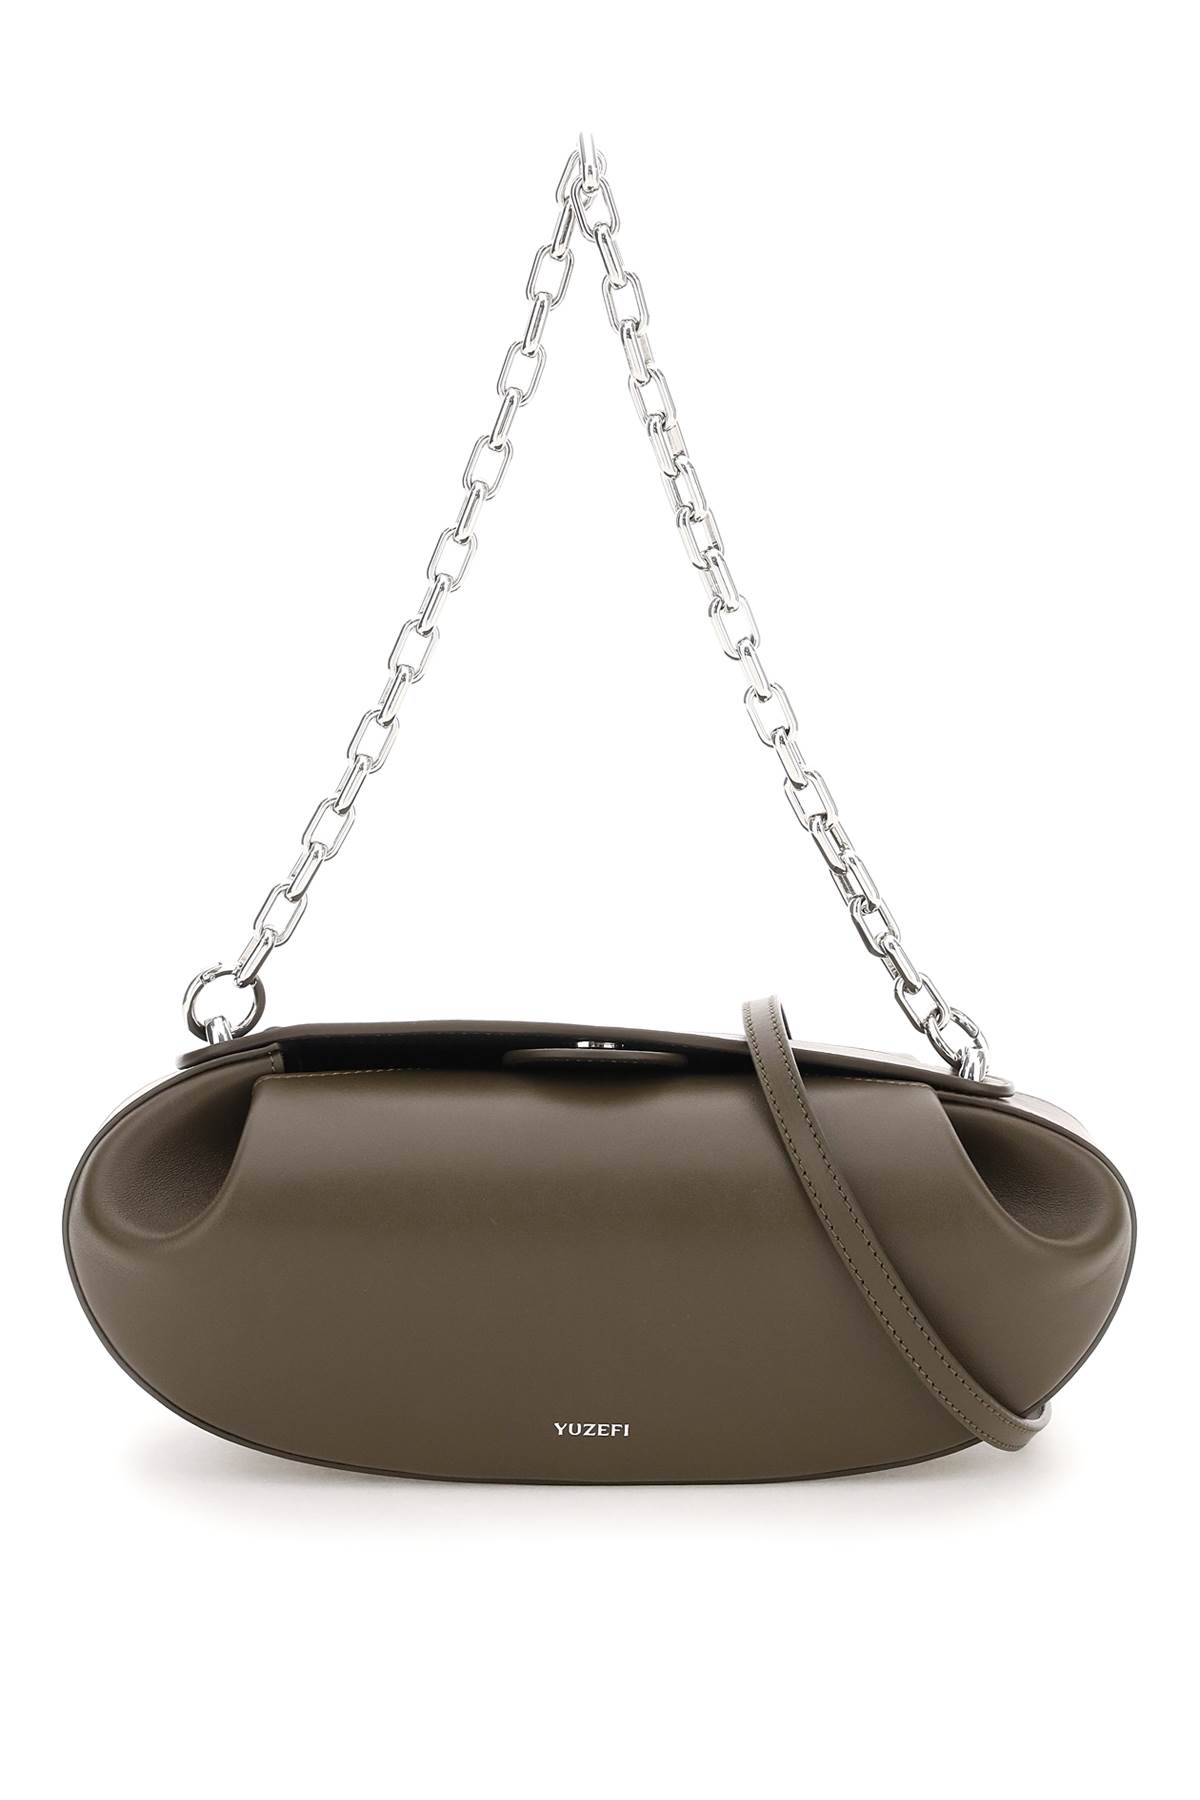 YUZEFI Baton Chain Leather Bag